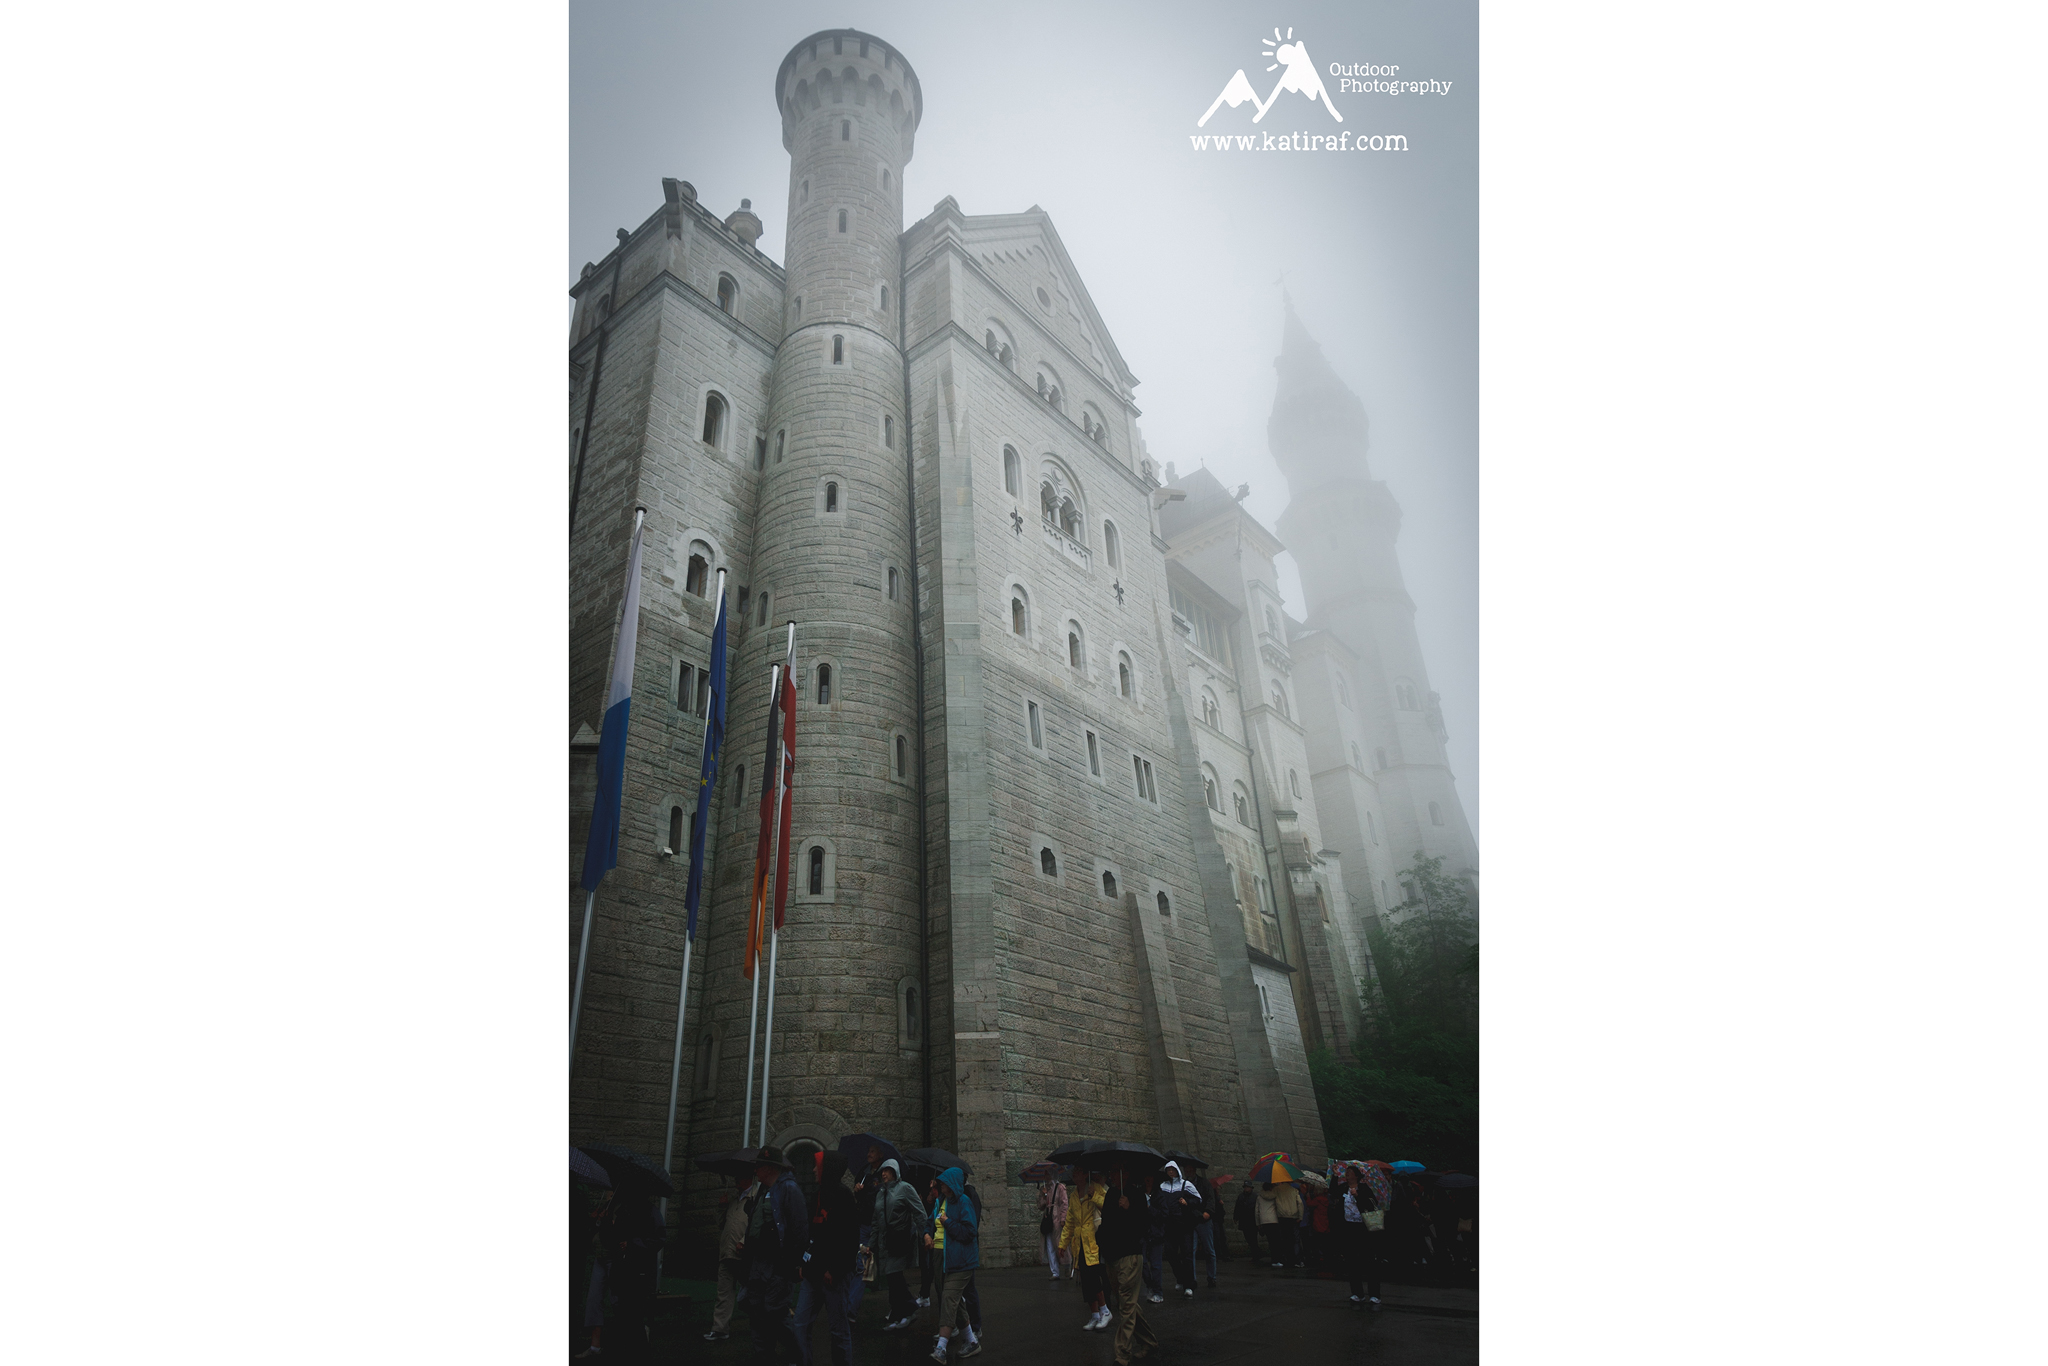 Najpiękniejsze zamki w Europie Zamek Neuschwanstein www.katiraf.com